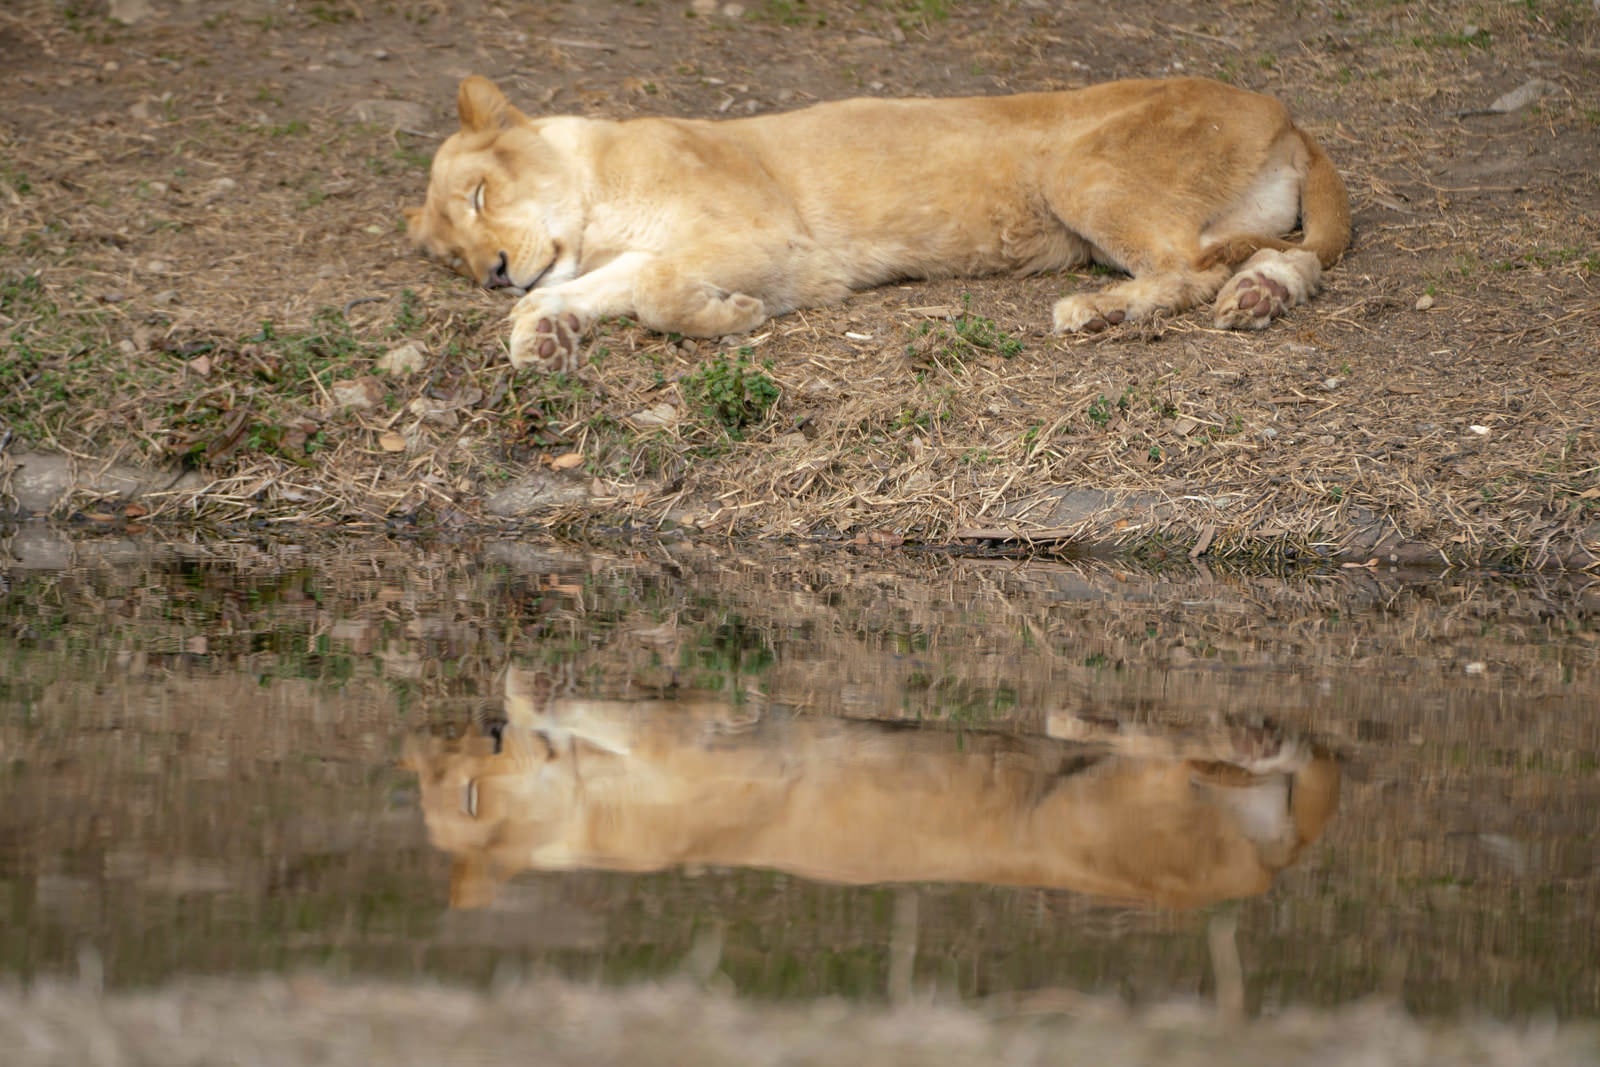 「水場で寝落ちするメスライオン」の写真